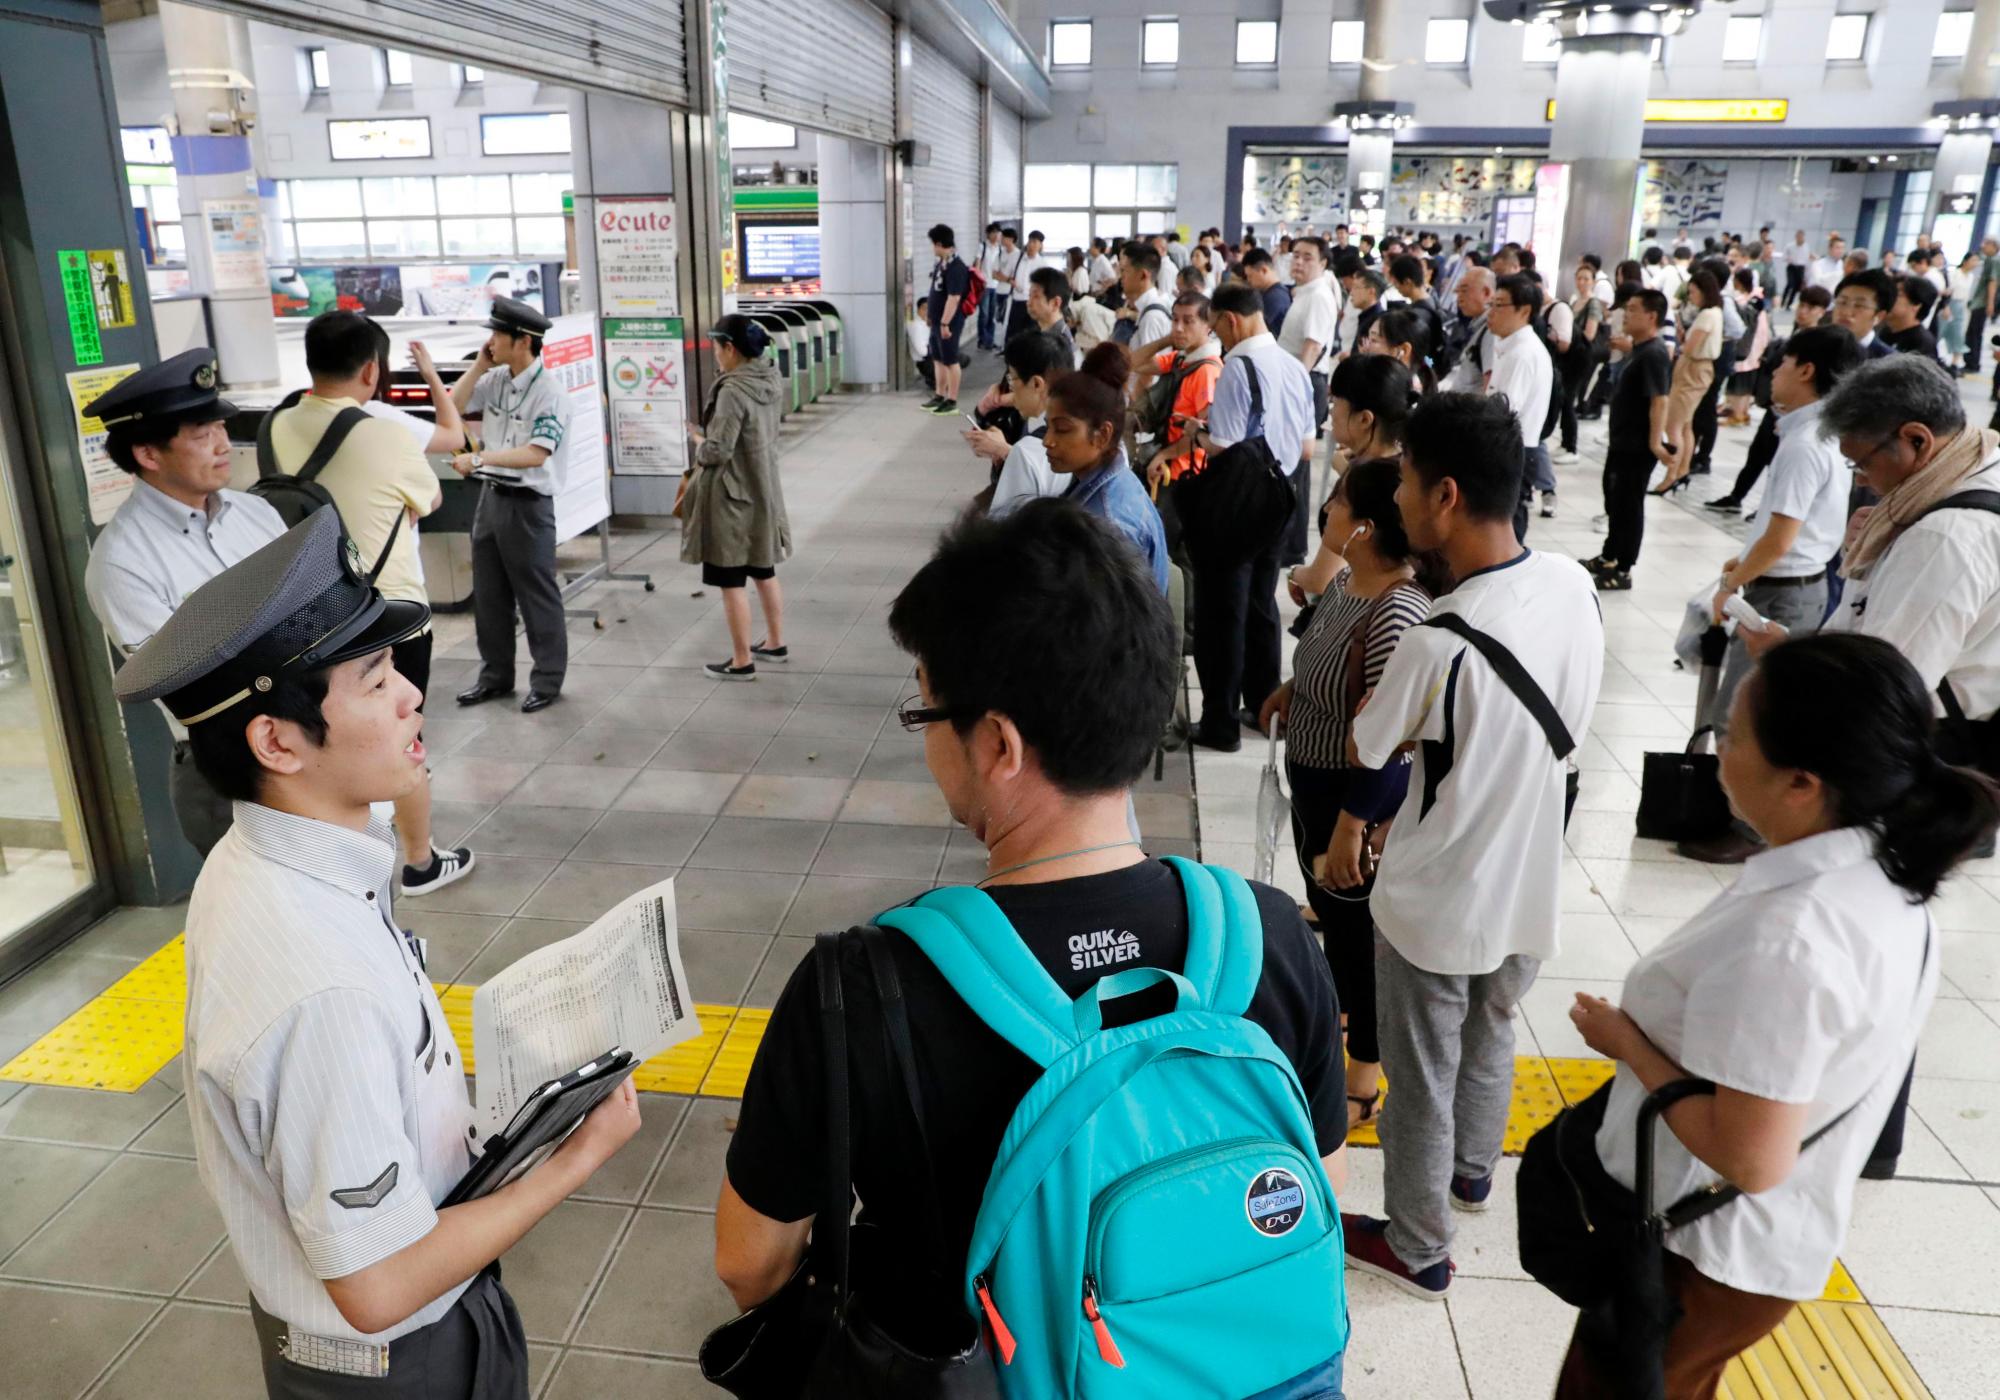 Los pasajeros esperan en una estación mientras se suspende la operación del tren debido al tifón, el lunes 9 de septiembre de 2019 en Tokio. Un tifón sopló el área metropolitana de Tokio el lunes por la mañana, interrumpiendo los viajes en las horas pico y cortando el poder. 